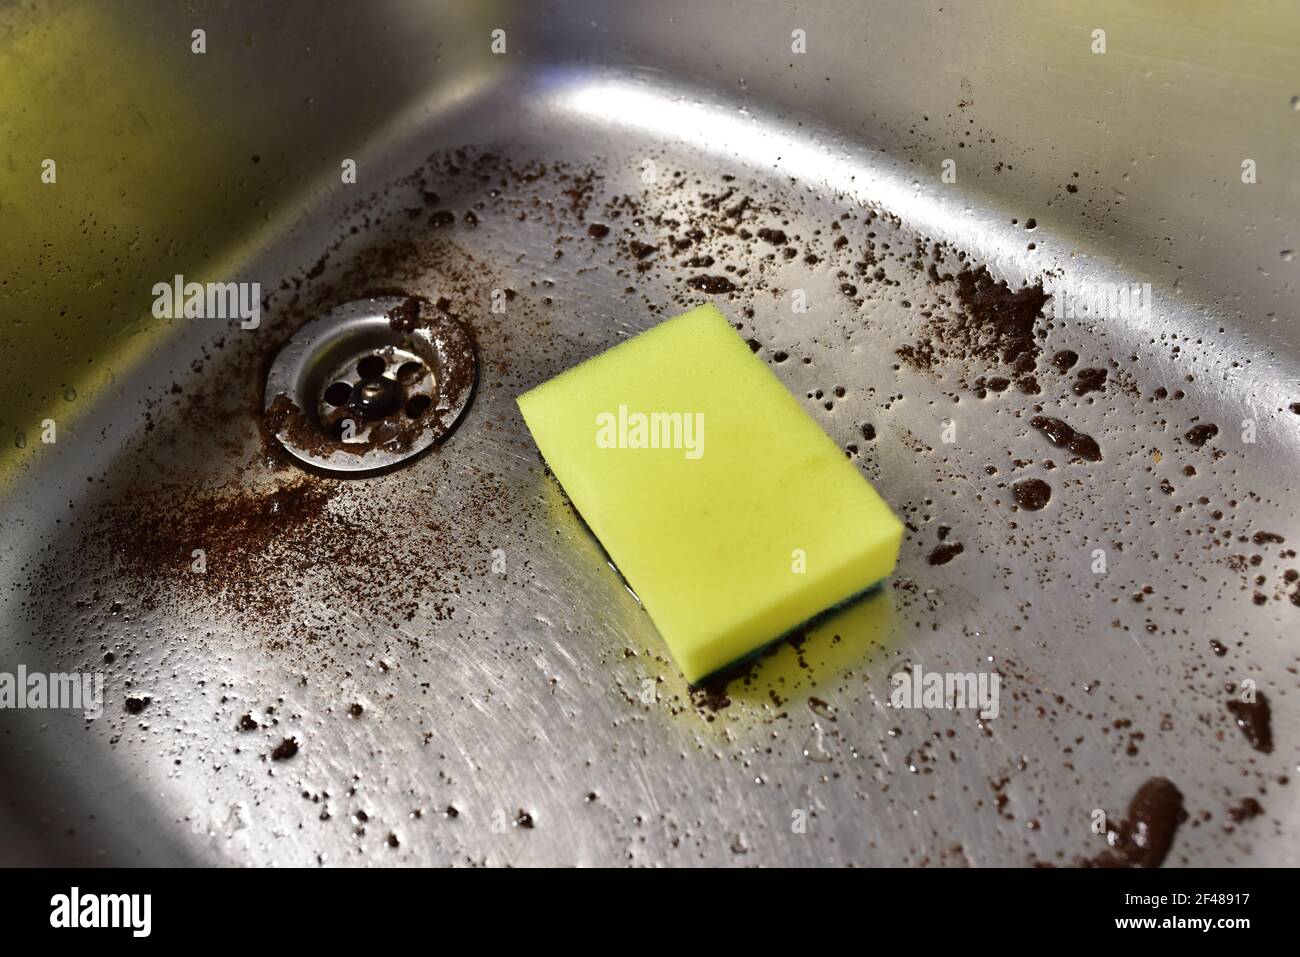 Schwamm mit Waschmittel und Schaum beim Waschen der Spüle in der Küche.  Geschirr und Sanitär waschen. Schwämme zum Waschen und Reinigen von  Schmutz. Entfernen von Greas Stockfotografie - Alamy